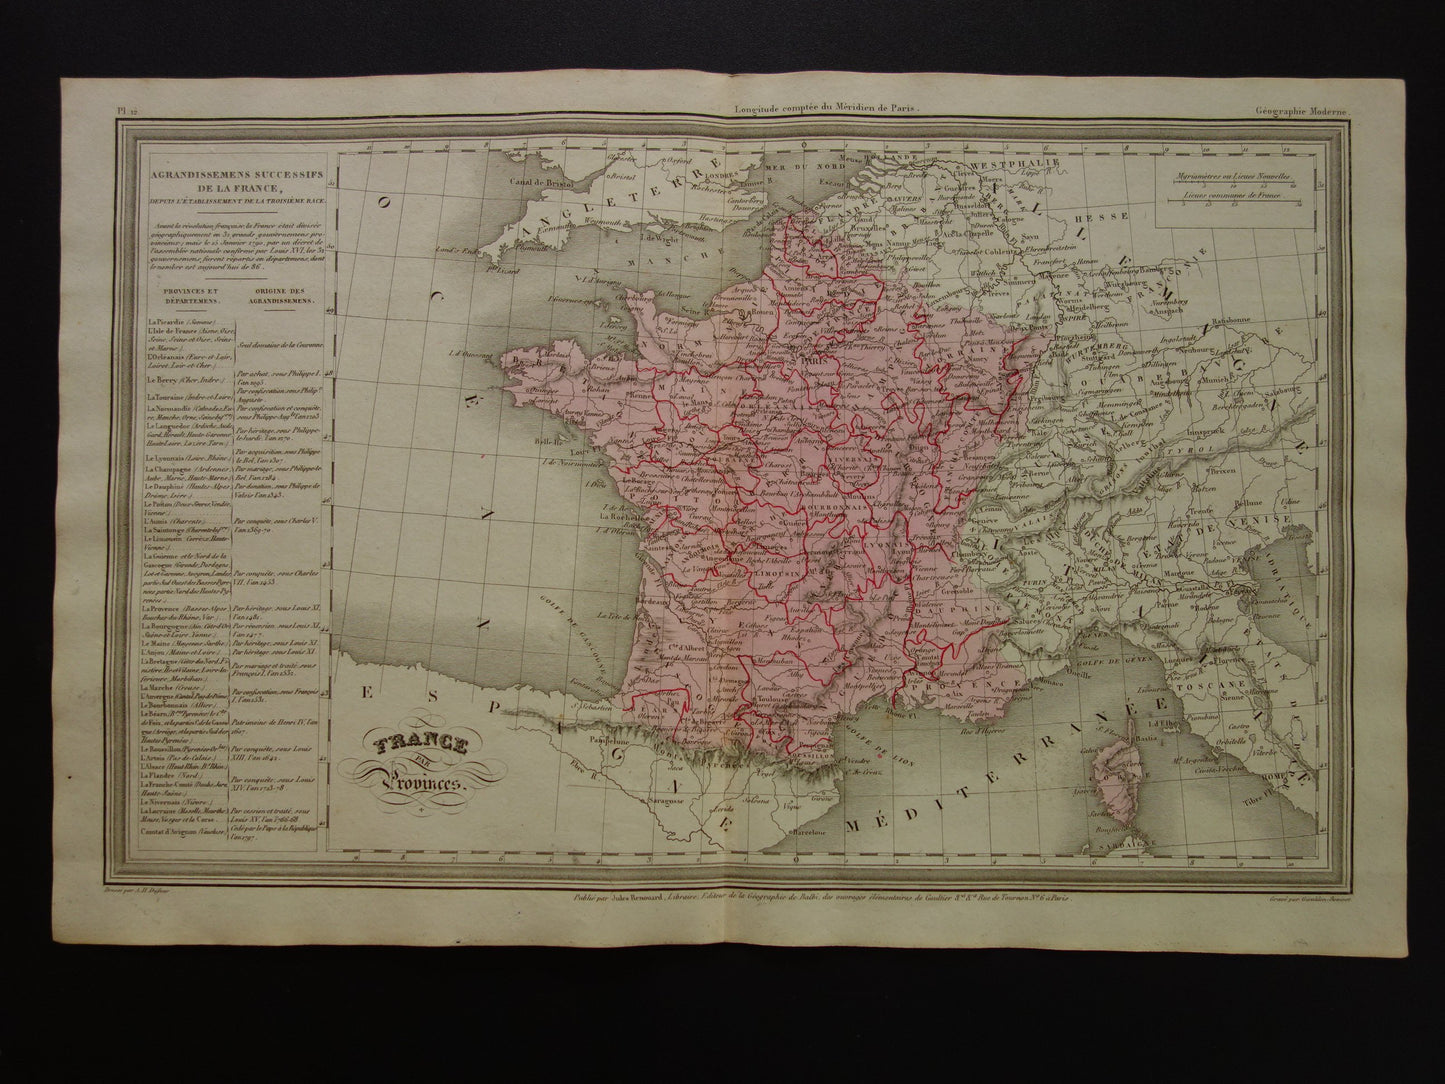 1838 kaart van Frankrijk met provincies en departementen